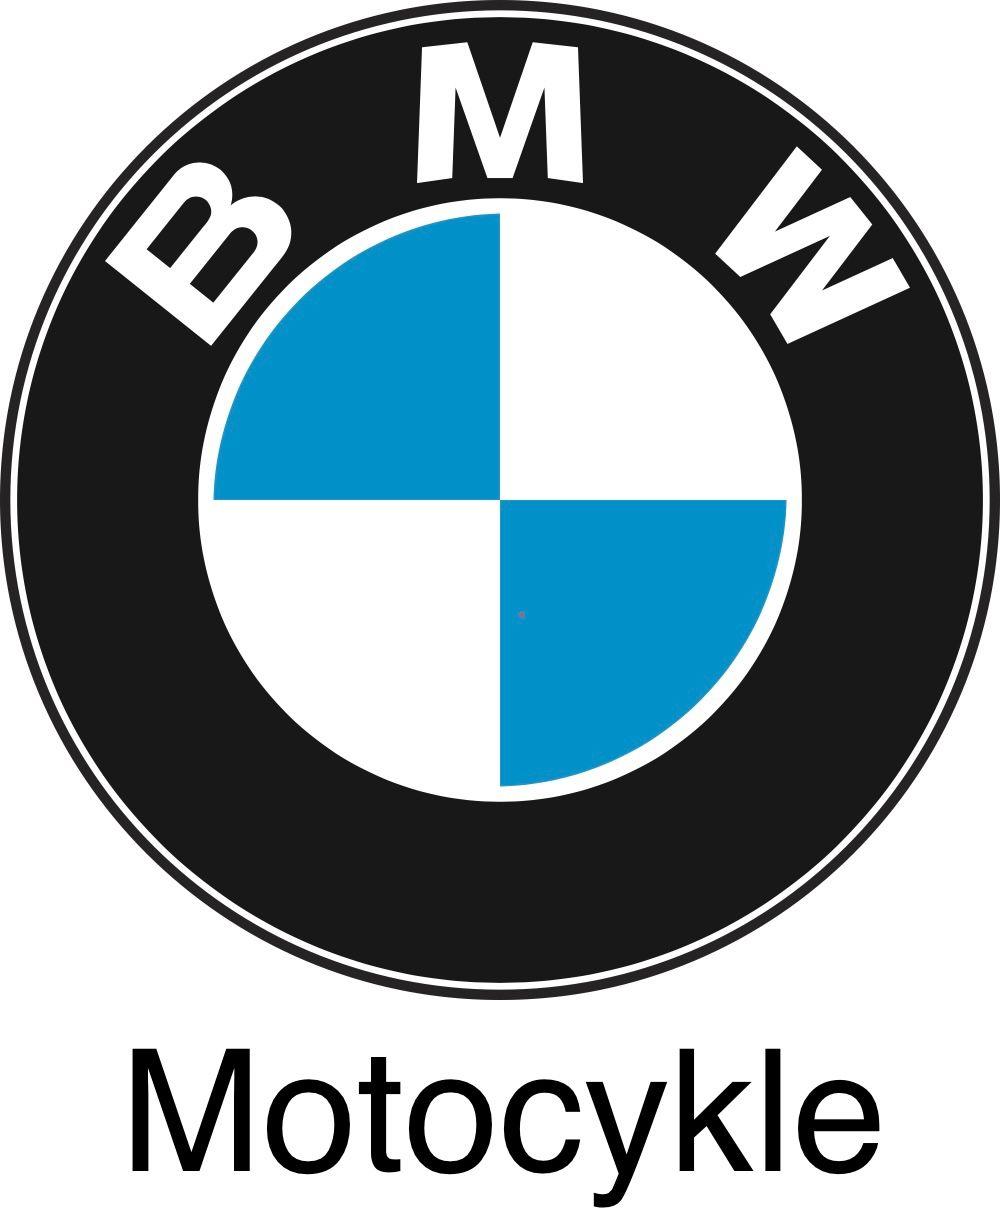 BMW Motocykle undefined